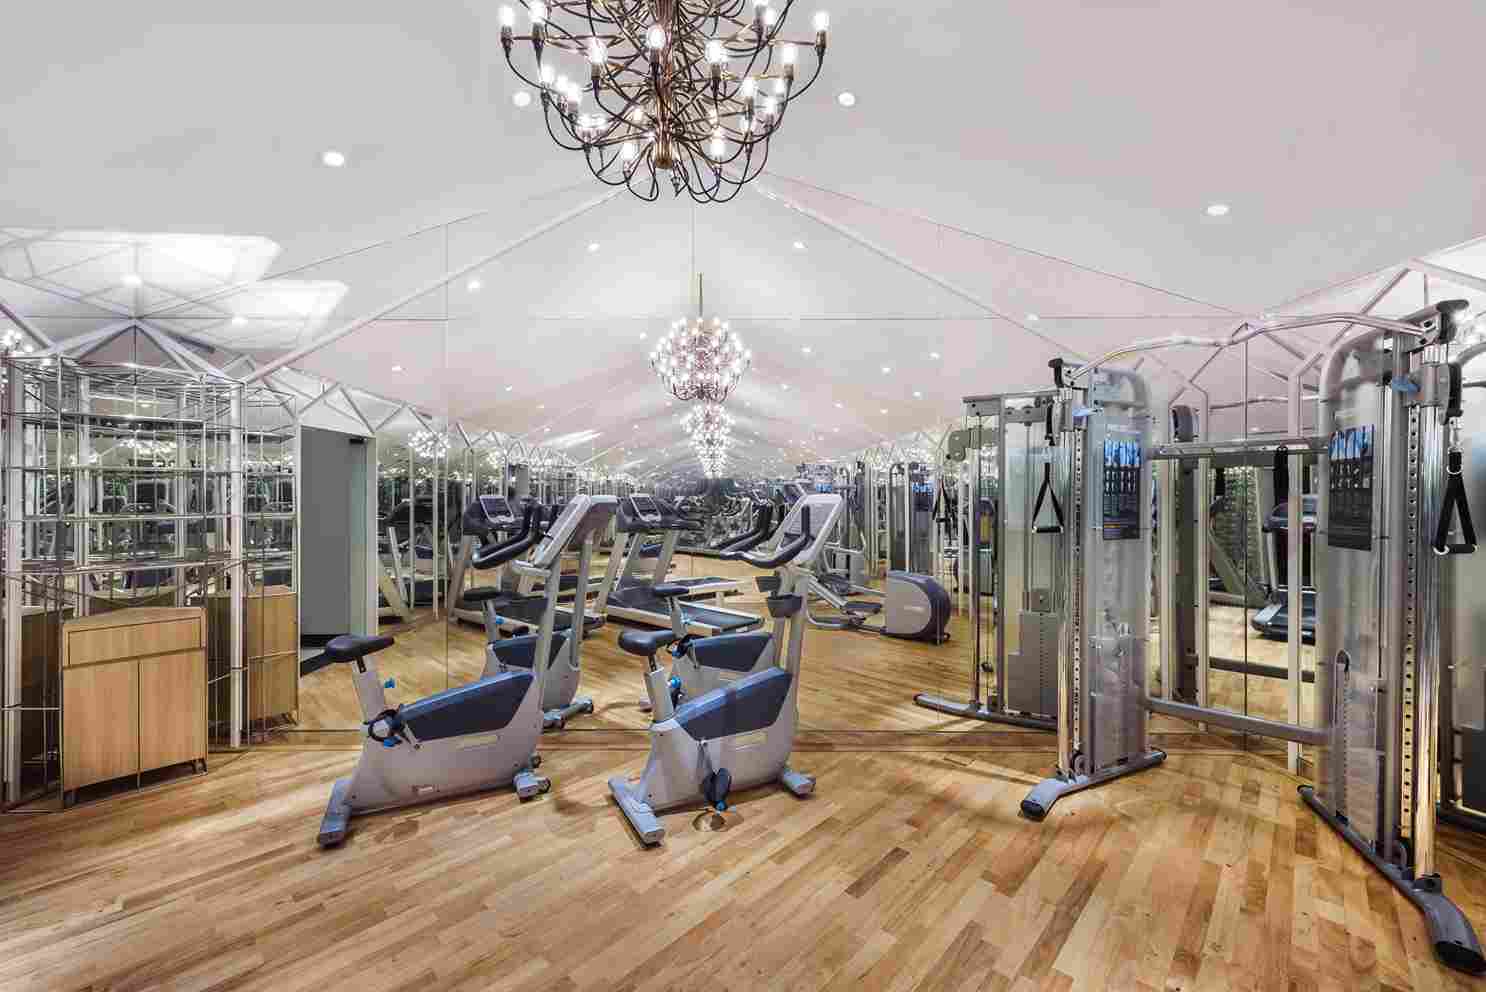 The Prestige Hotel fitness centre